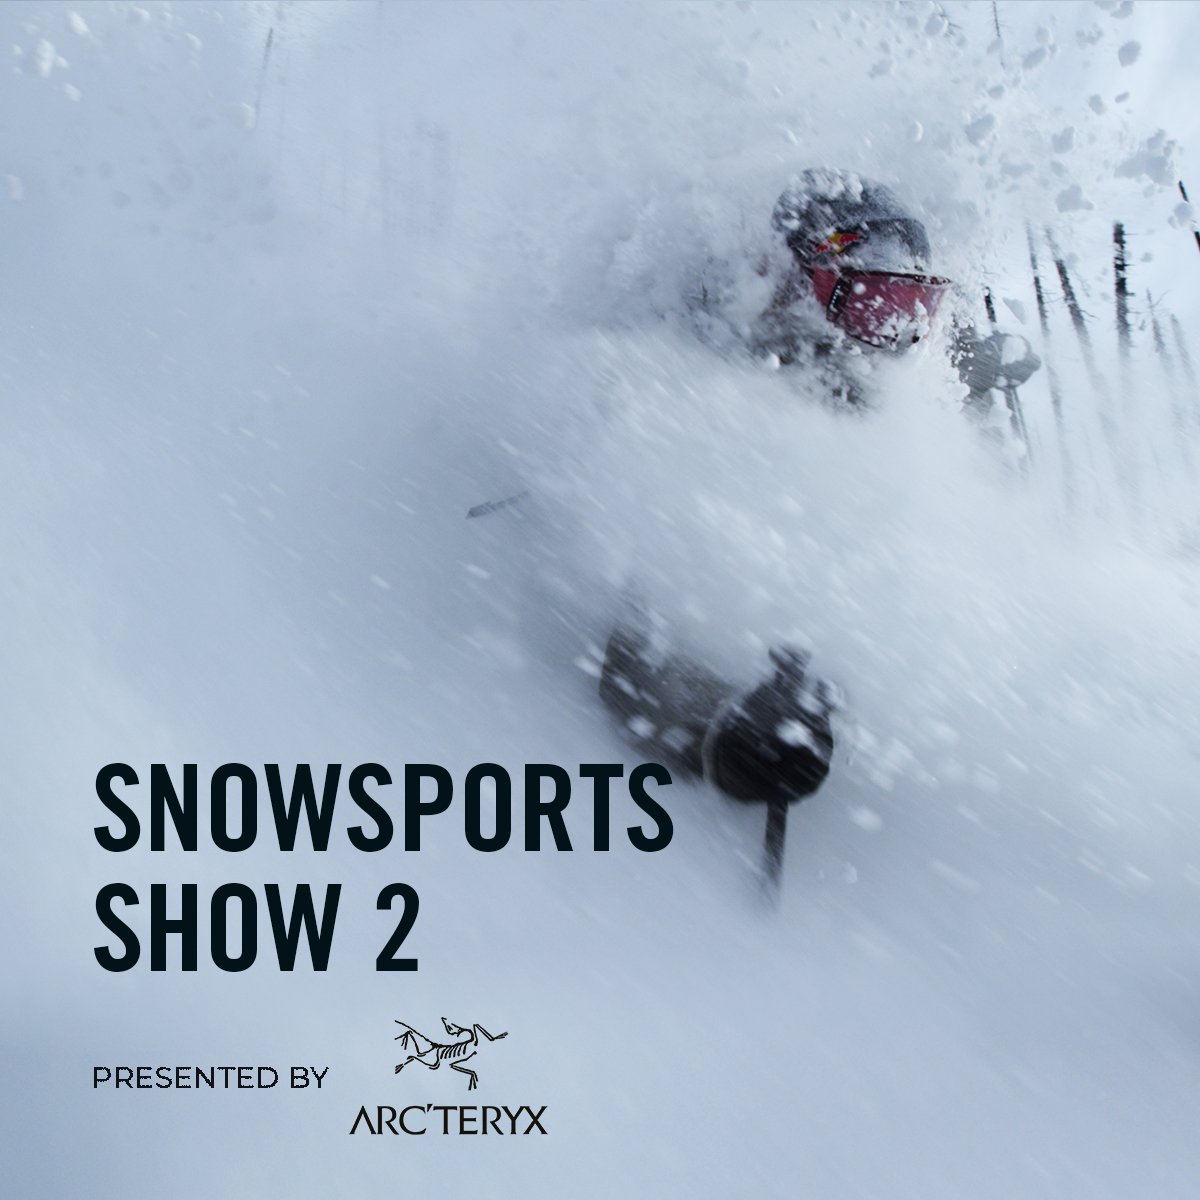 VIMFF Fall Series snowsports show arcteryx x